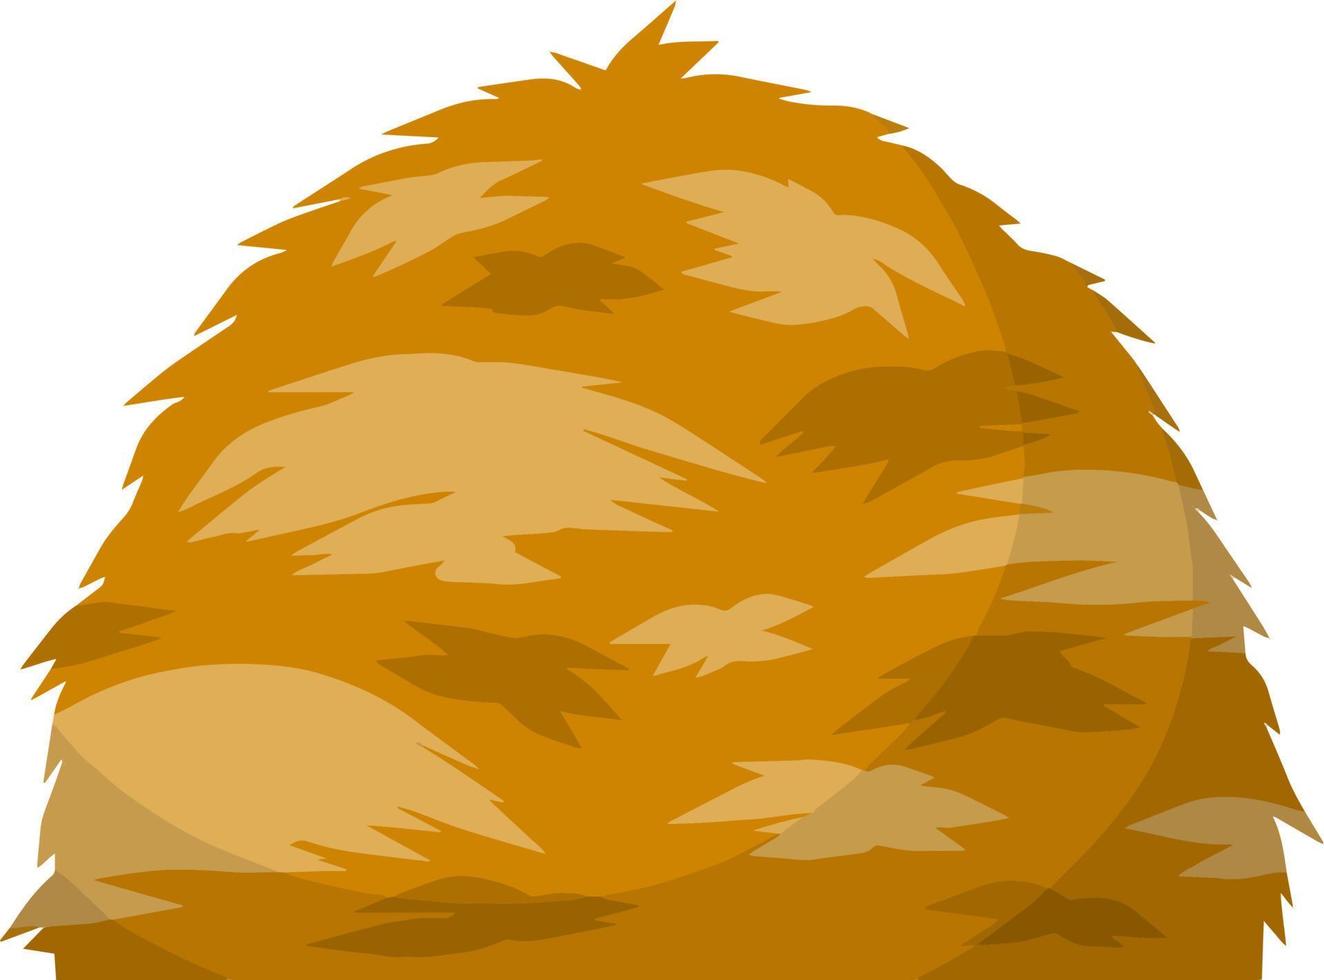 gavilla de espigas de trigo. cultivo rural. elemento rústico de otoño. ilustración plana de dibujos animados. manojo de pajar de cosecha vector